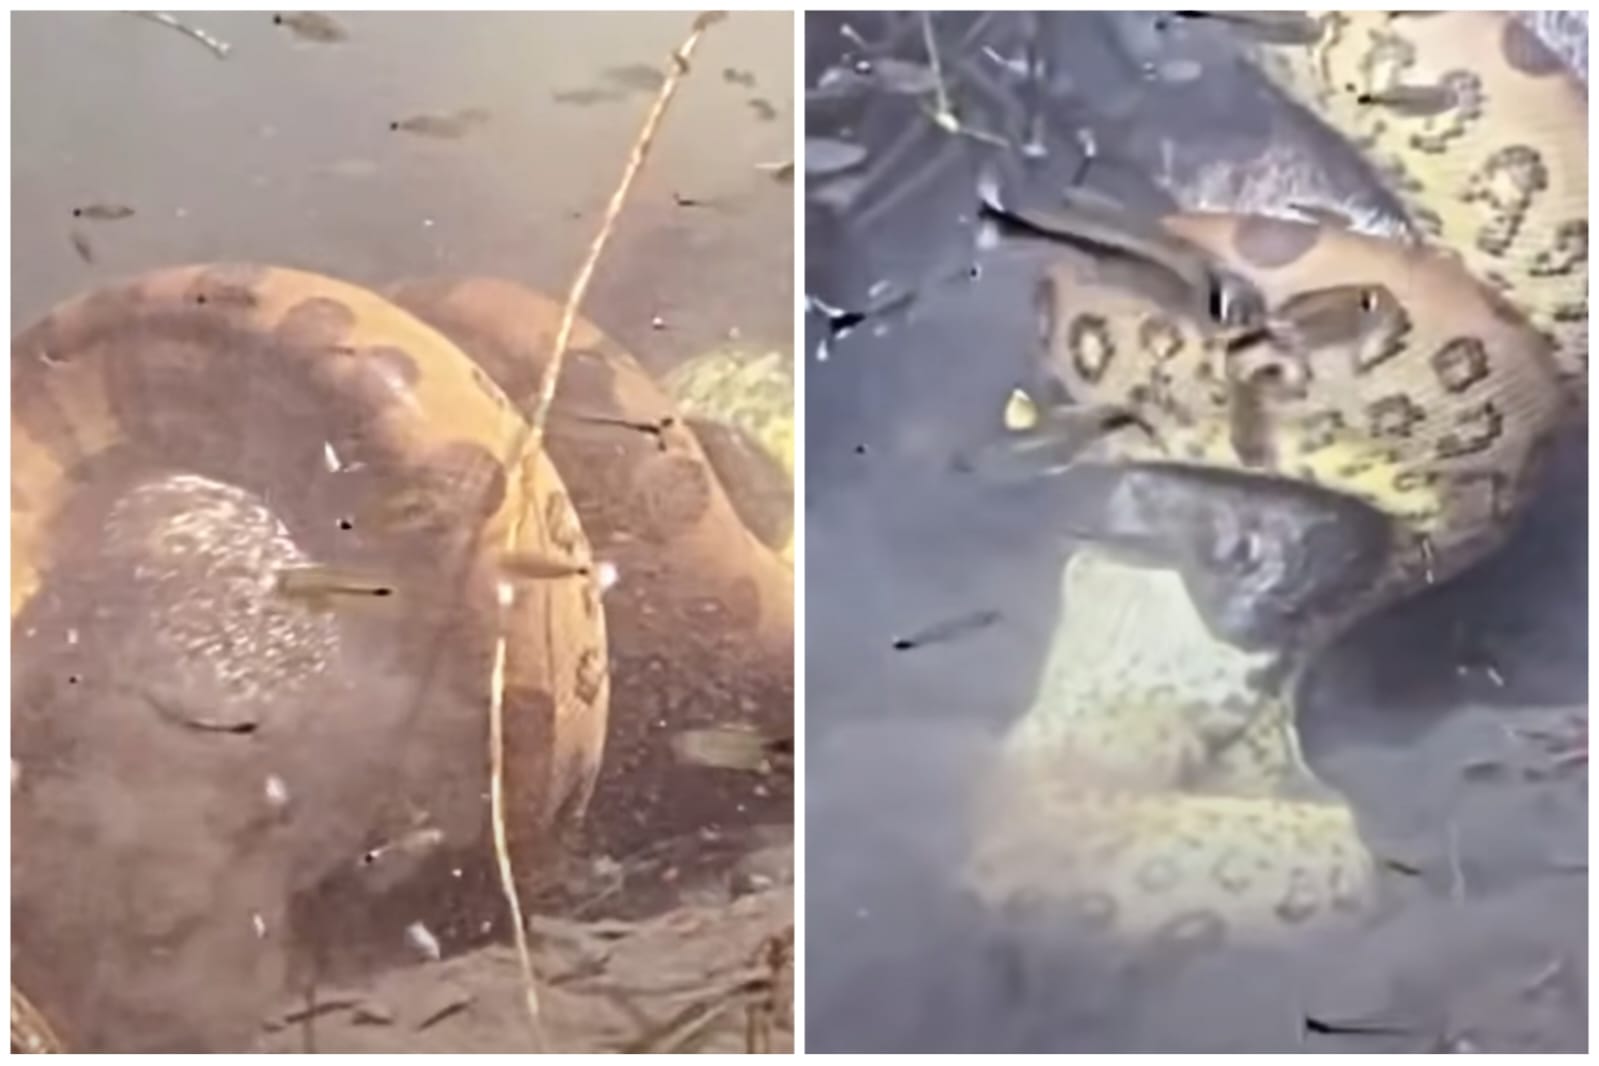 video-sucuri-abocanha-porco-selvagem-rio-ms-foto-reproducao-guiacelioaraujo